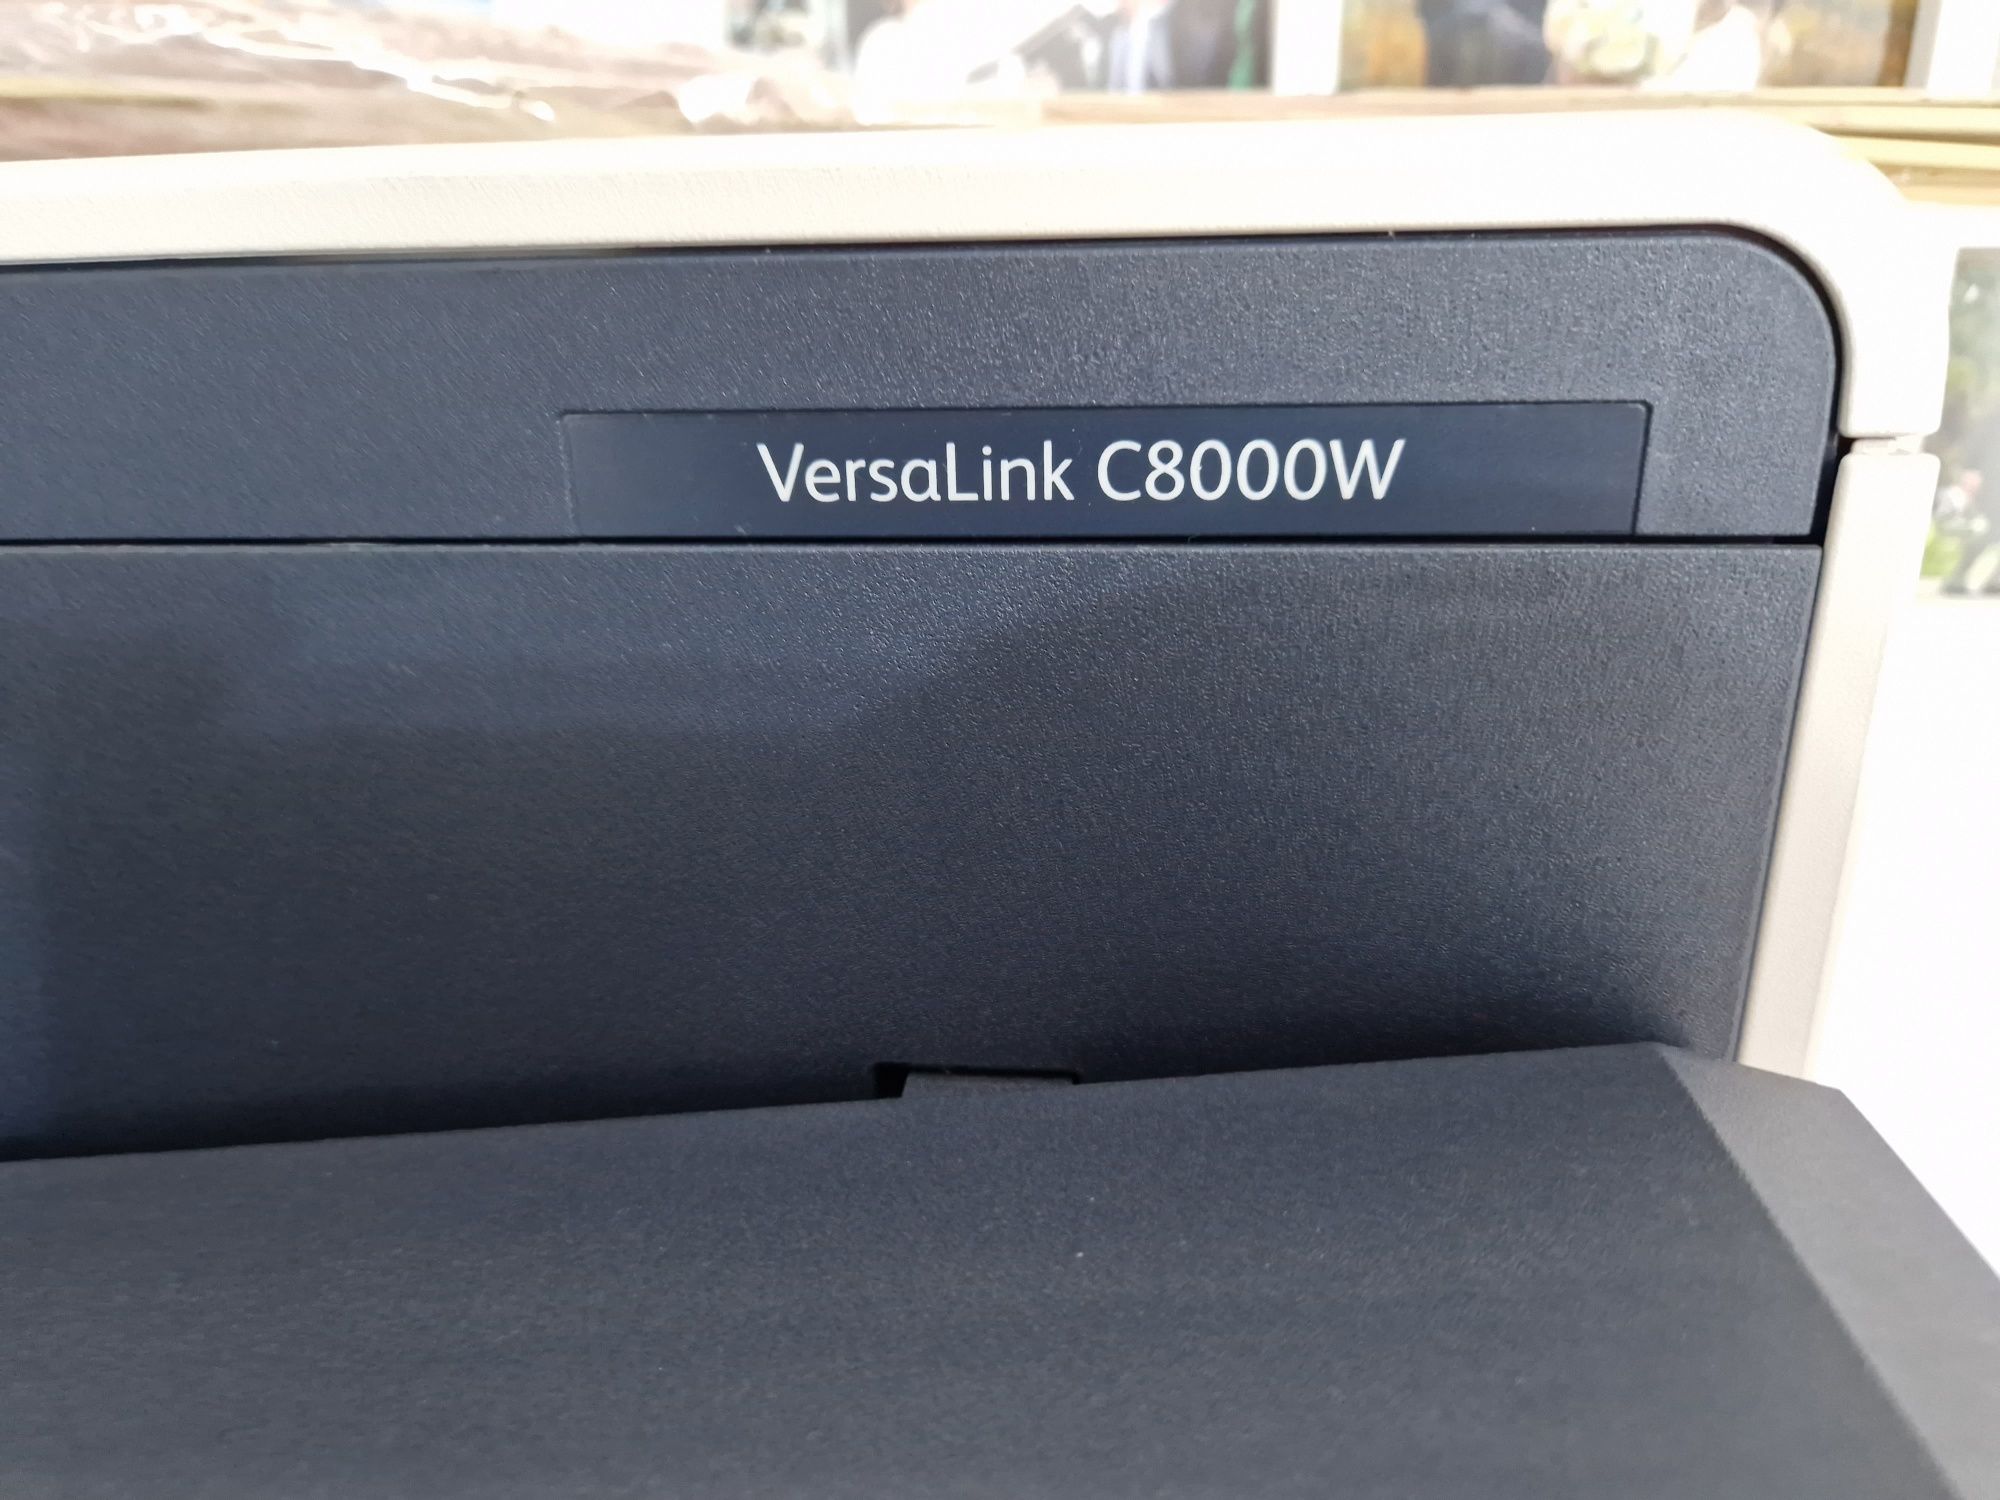 Vând imprimanta xerox VersaLink C8000W